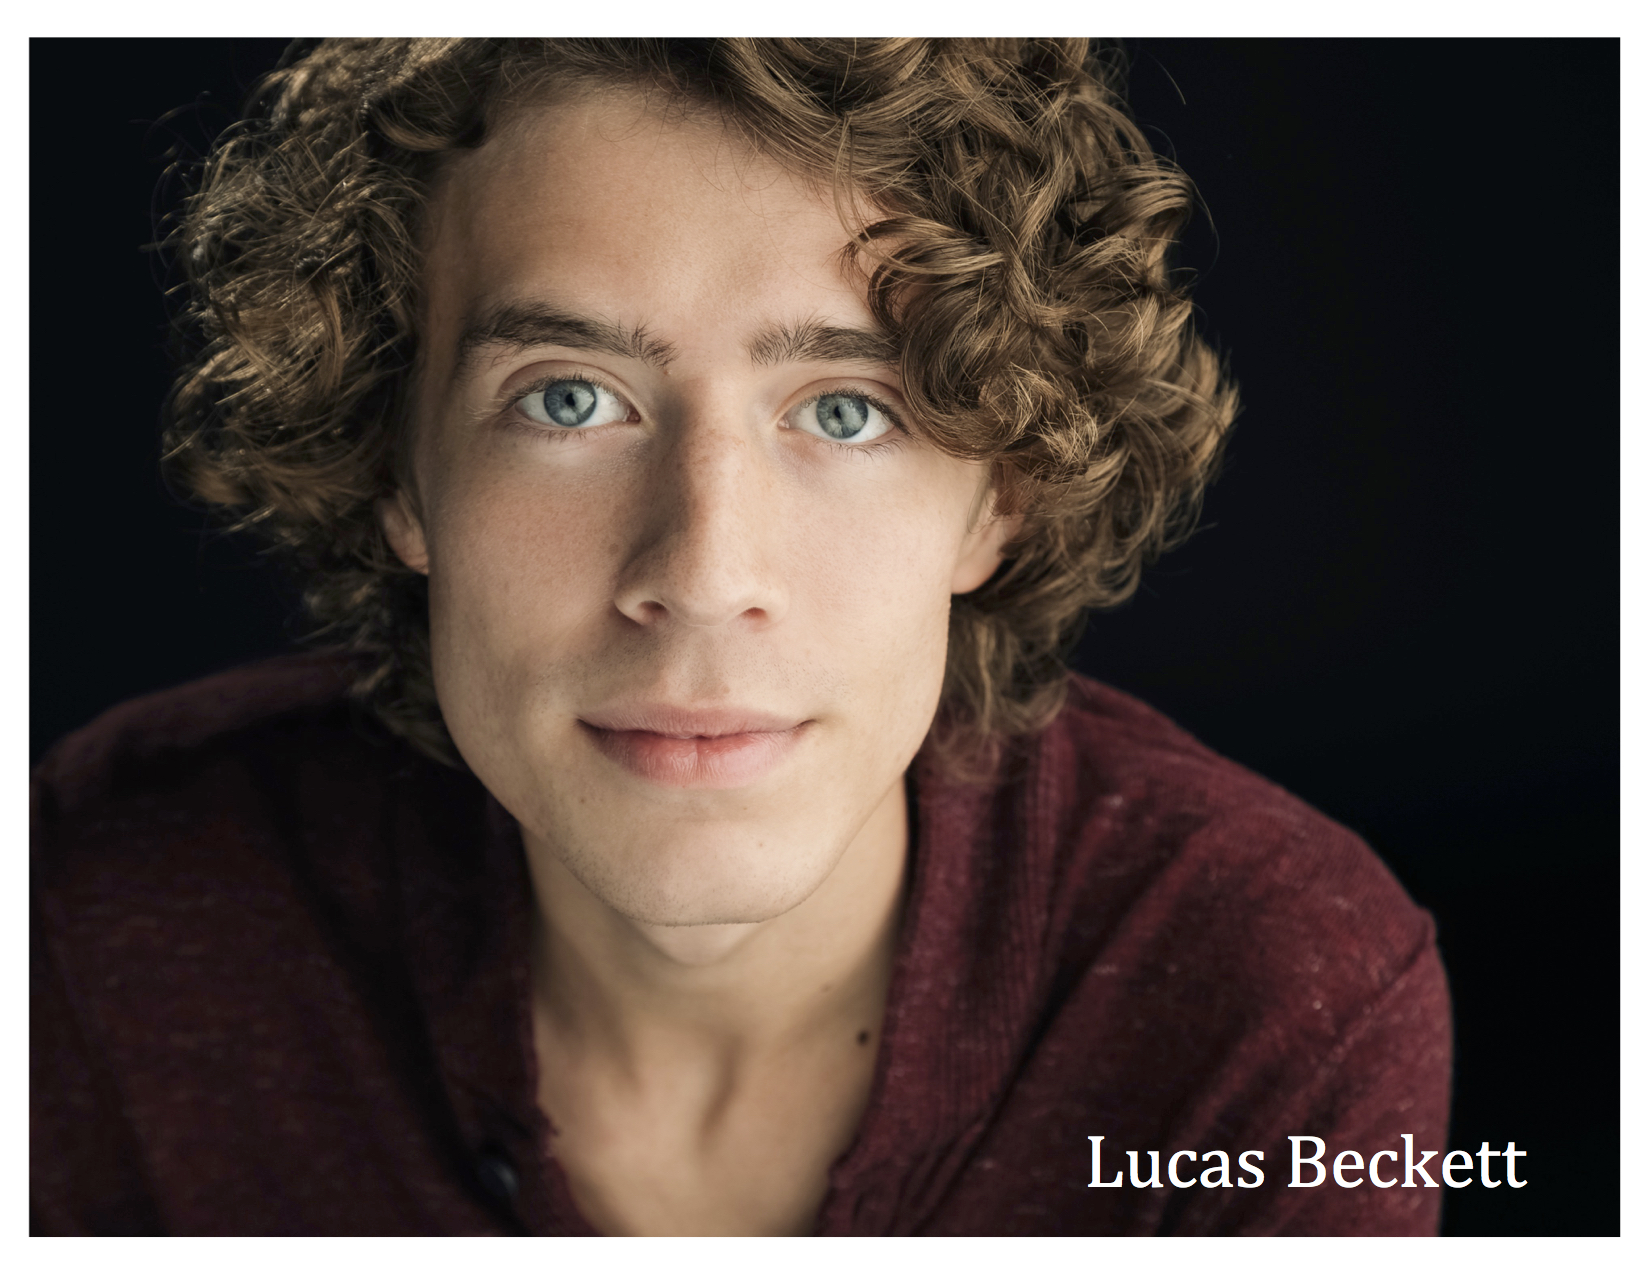 Lucas Beckett